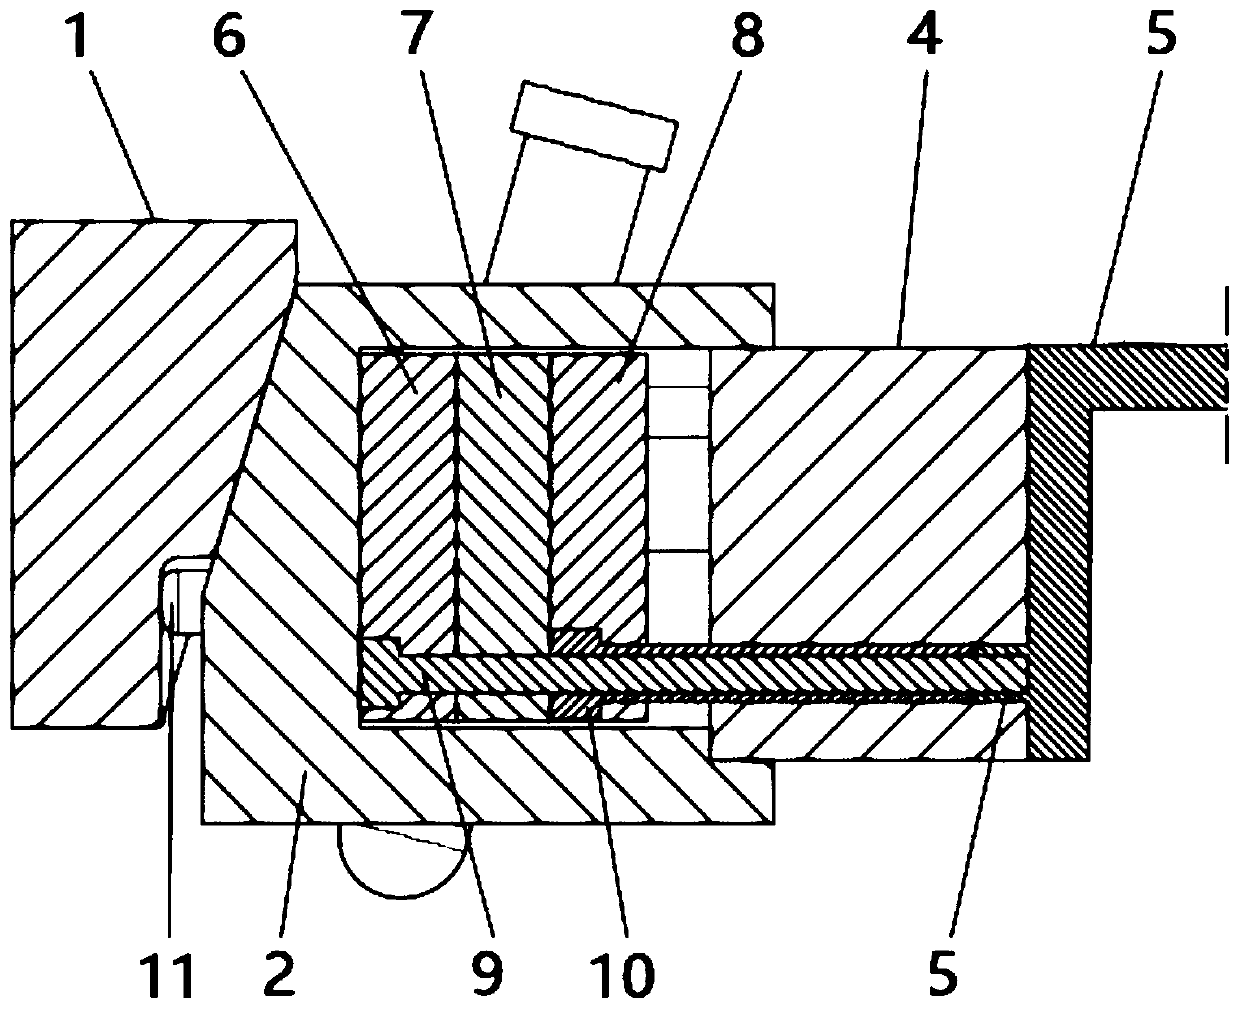 Ejection mechanism for inner side of sliding block